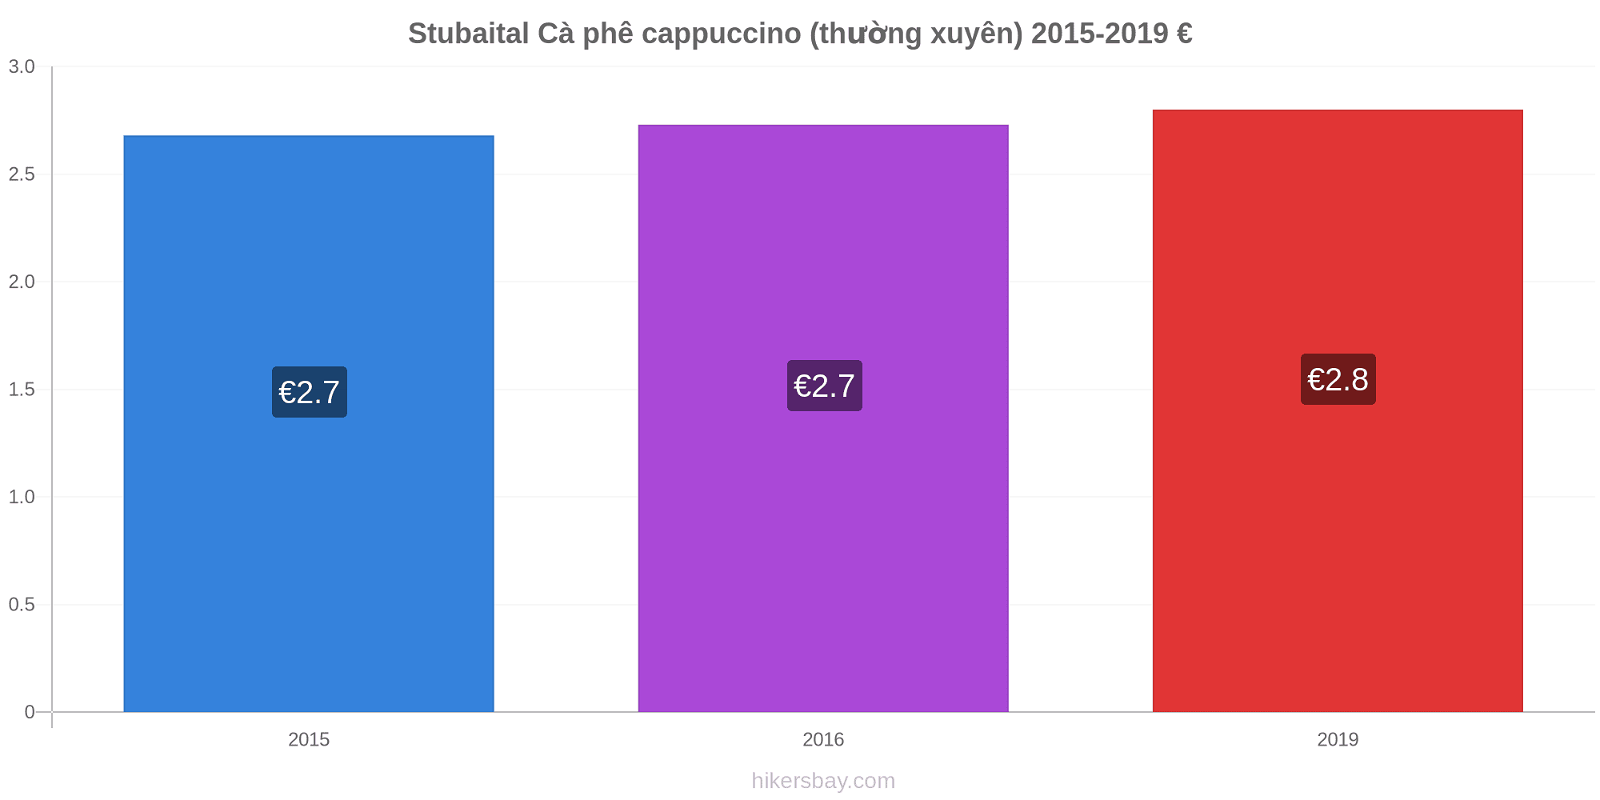 Stubaital thay đổi giá Cà phê cappuccino (thường xuyên) hikersbay.com